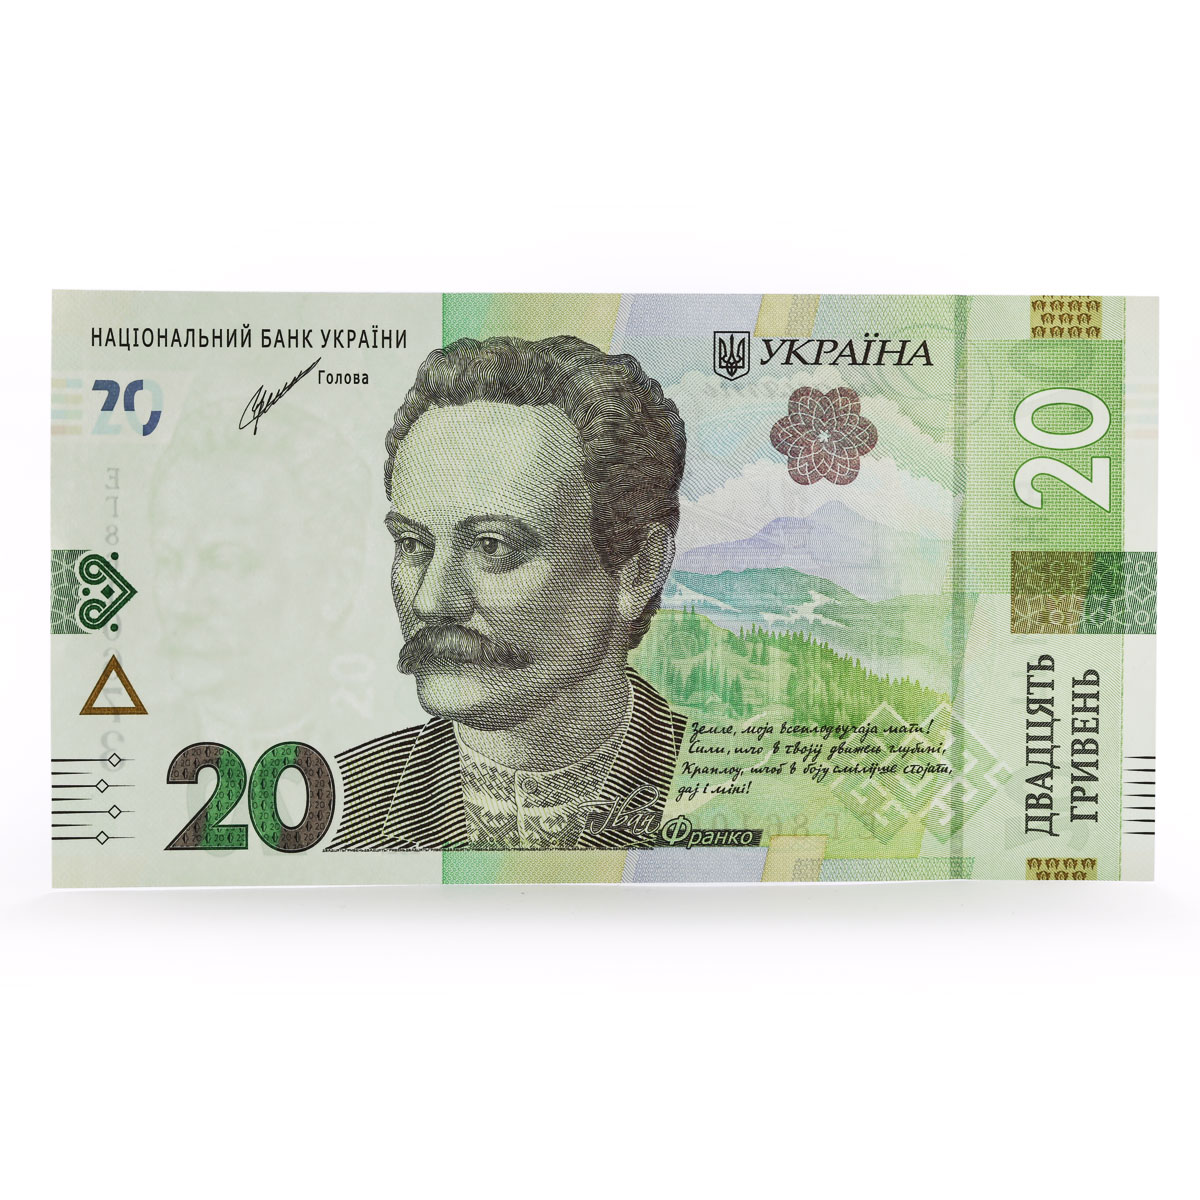 Ukraine 20 hryvnias 100 Notes UNC Banknotes Cash Currency Bundle Brick 2021